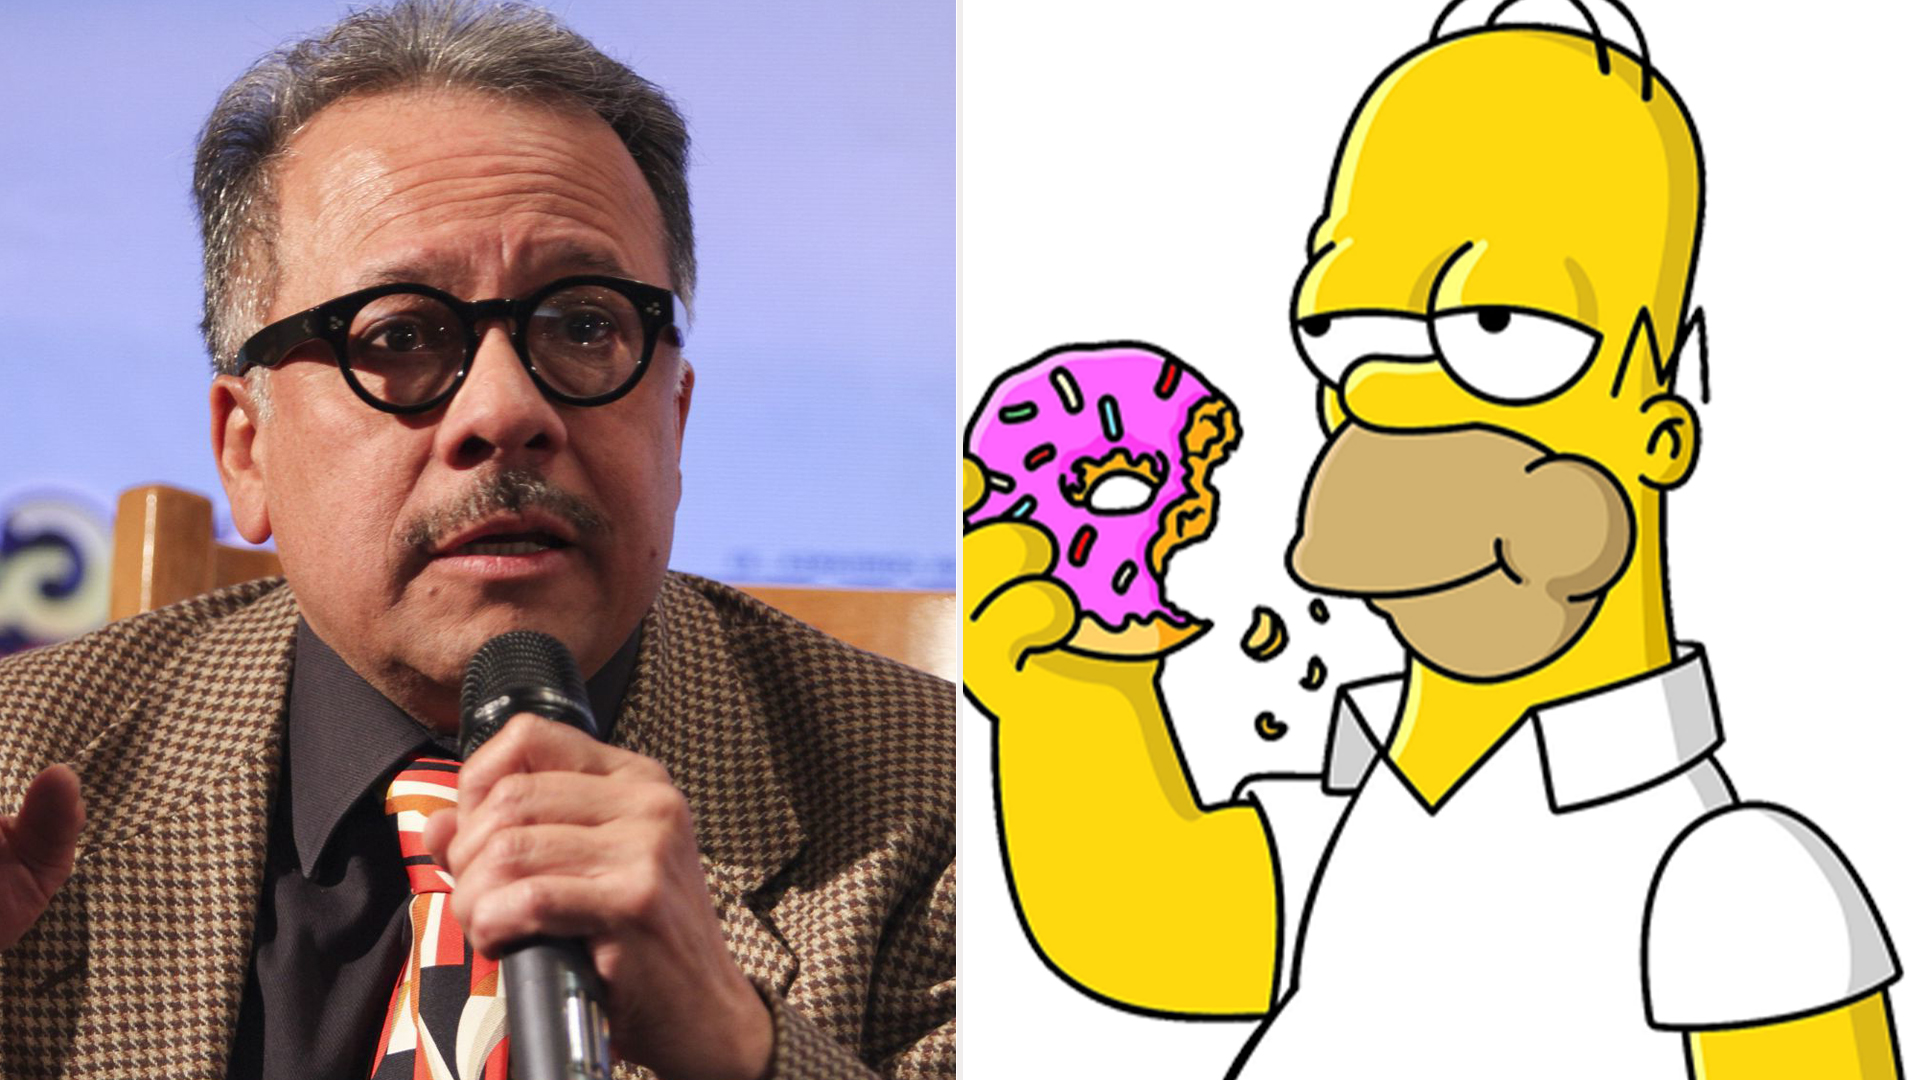 Después de 16 años, Humberto Vélez regresa para interpretar a Homero Simpson (Fotos: Cuartoscuro // Matt Groening)